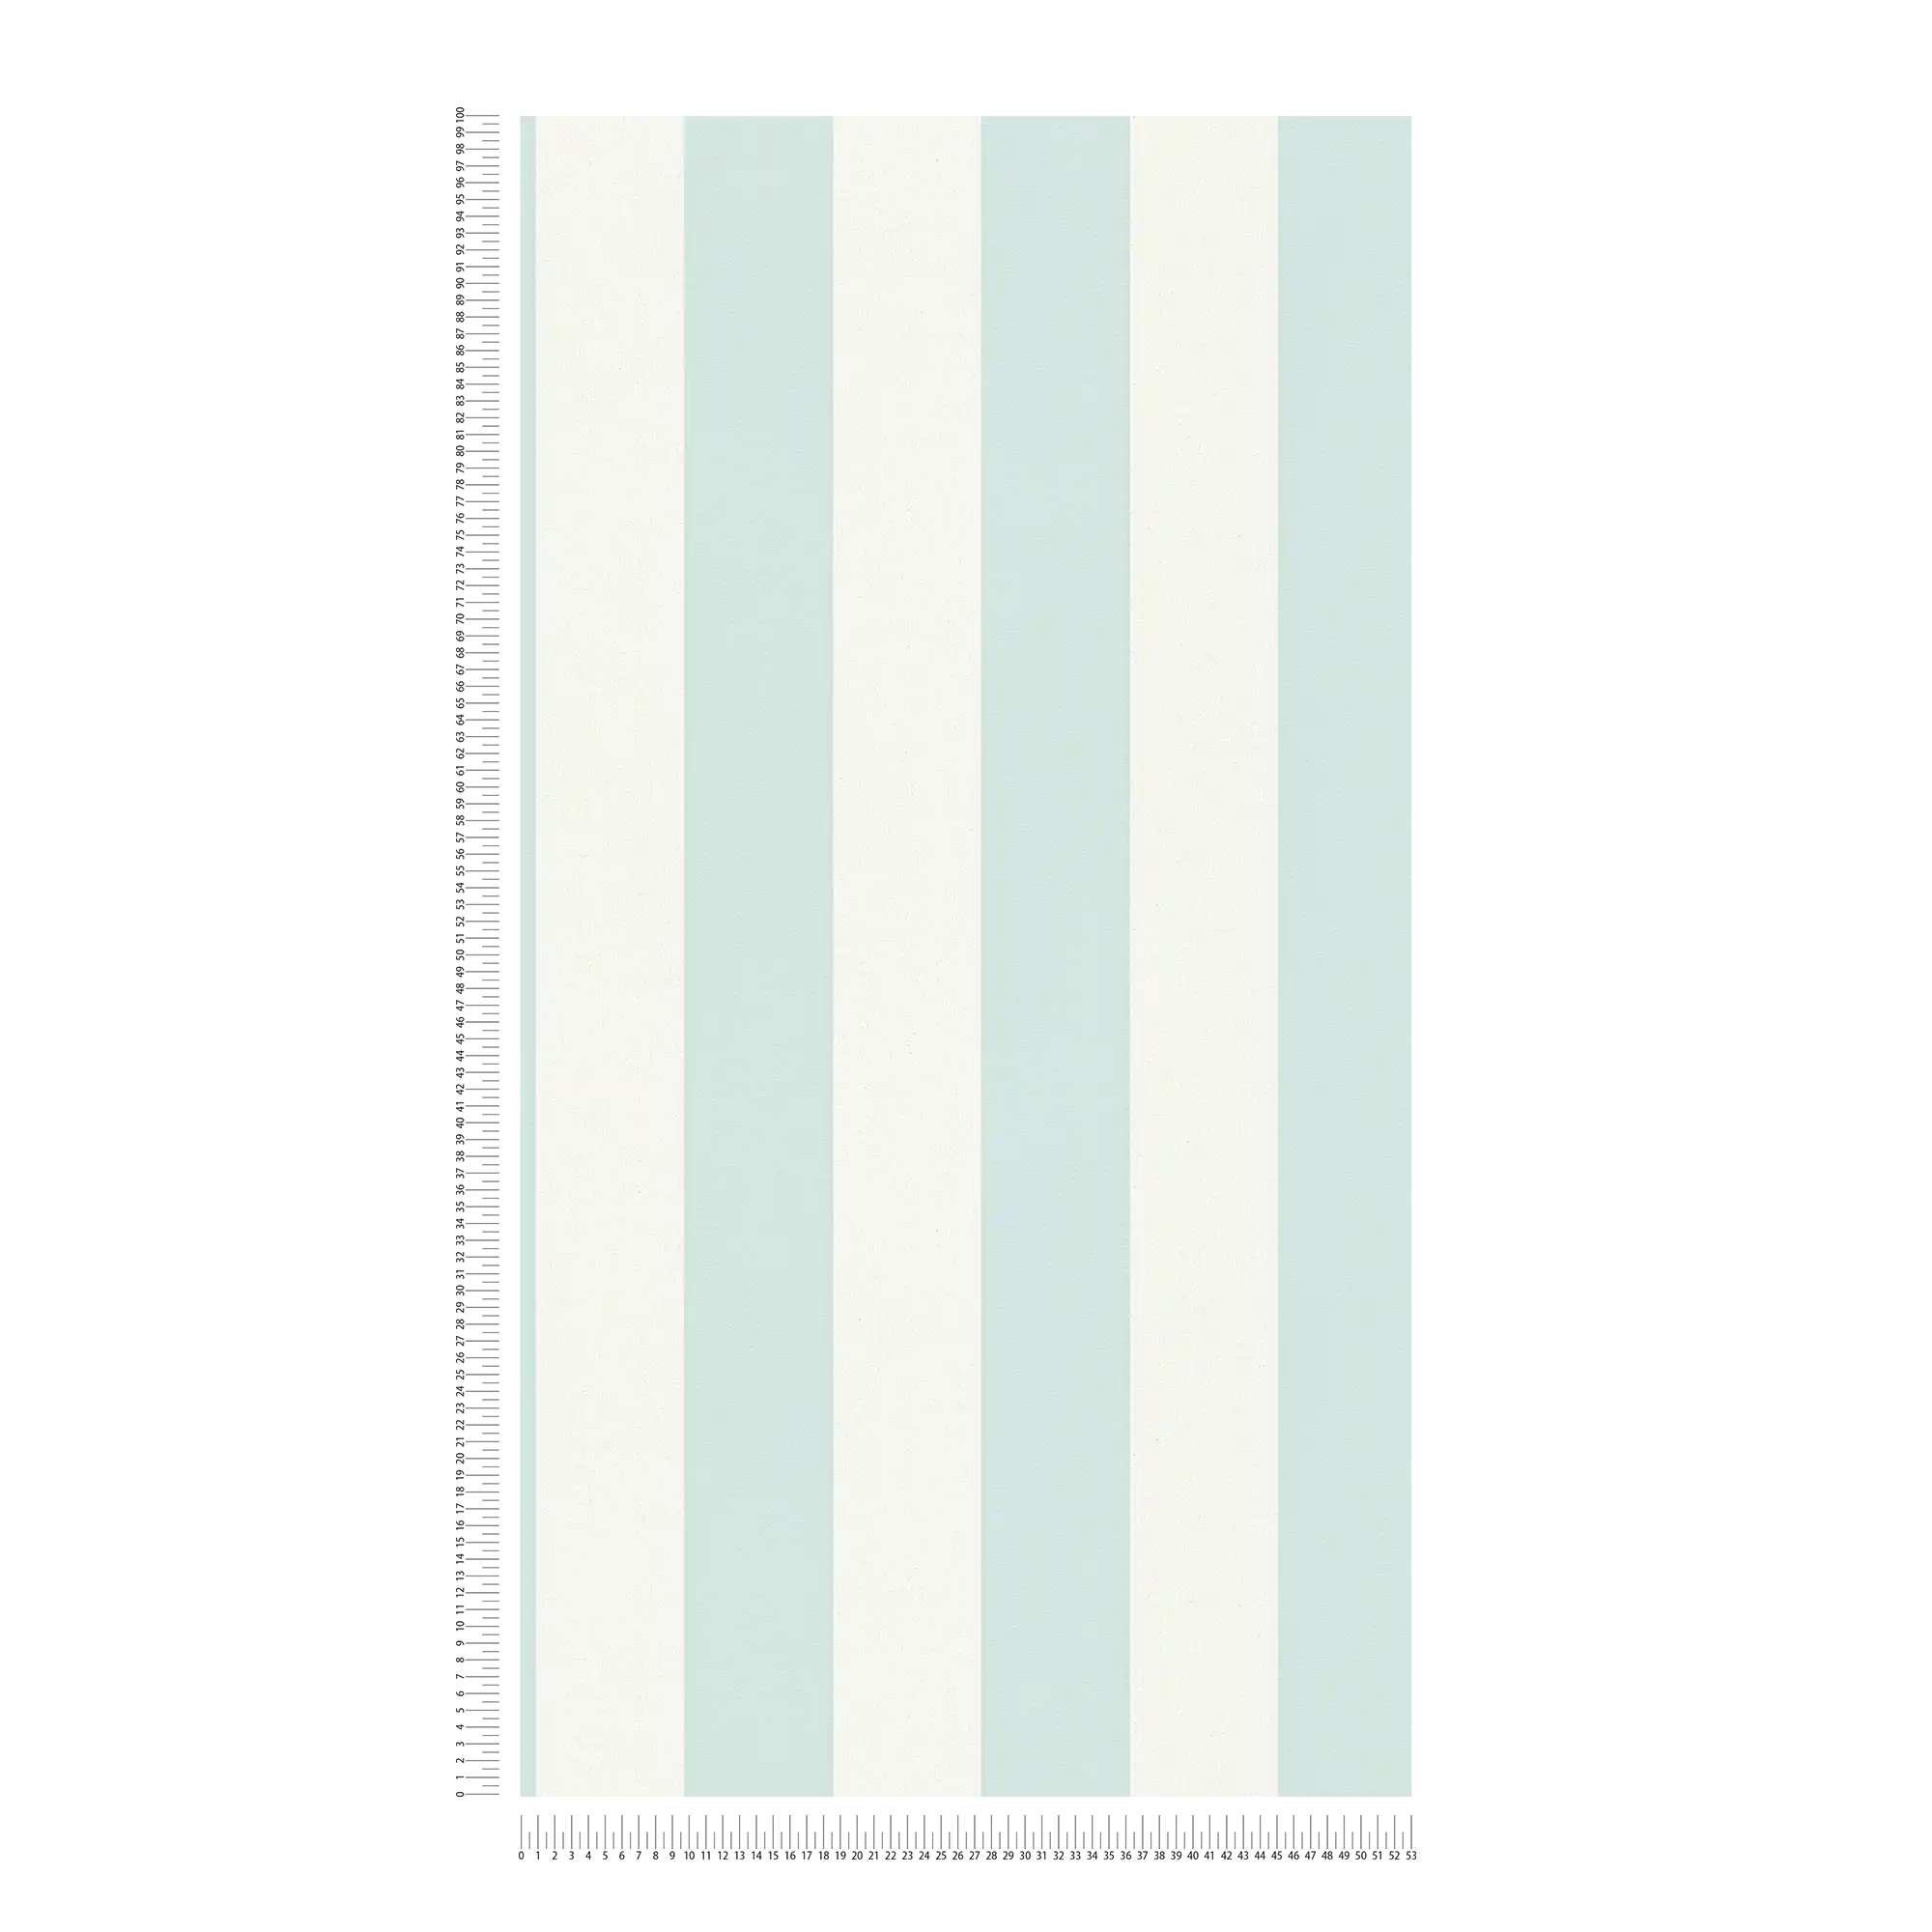             Streepbehang met structuurpatroon, blokstrepen blauw & wit
        